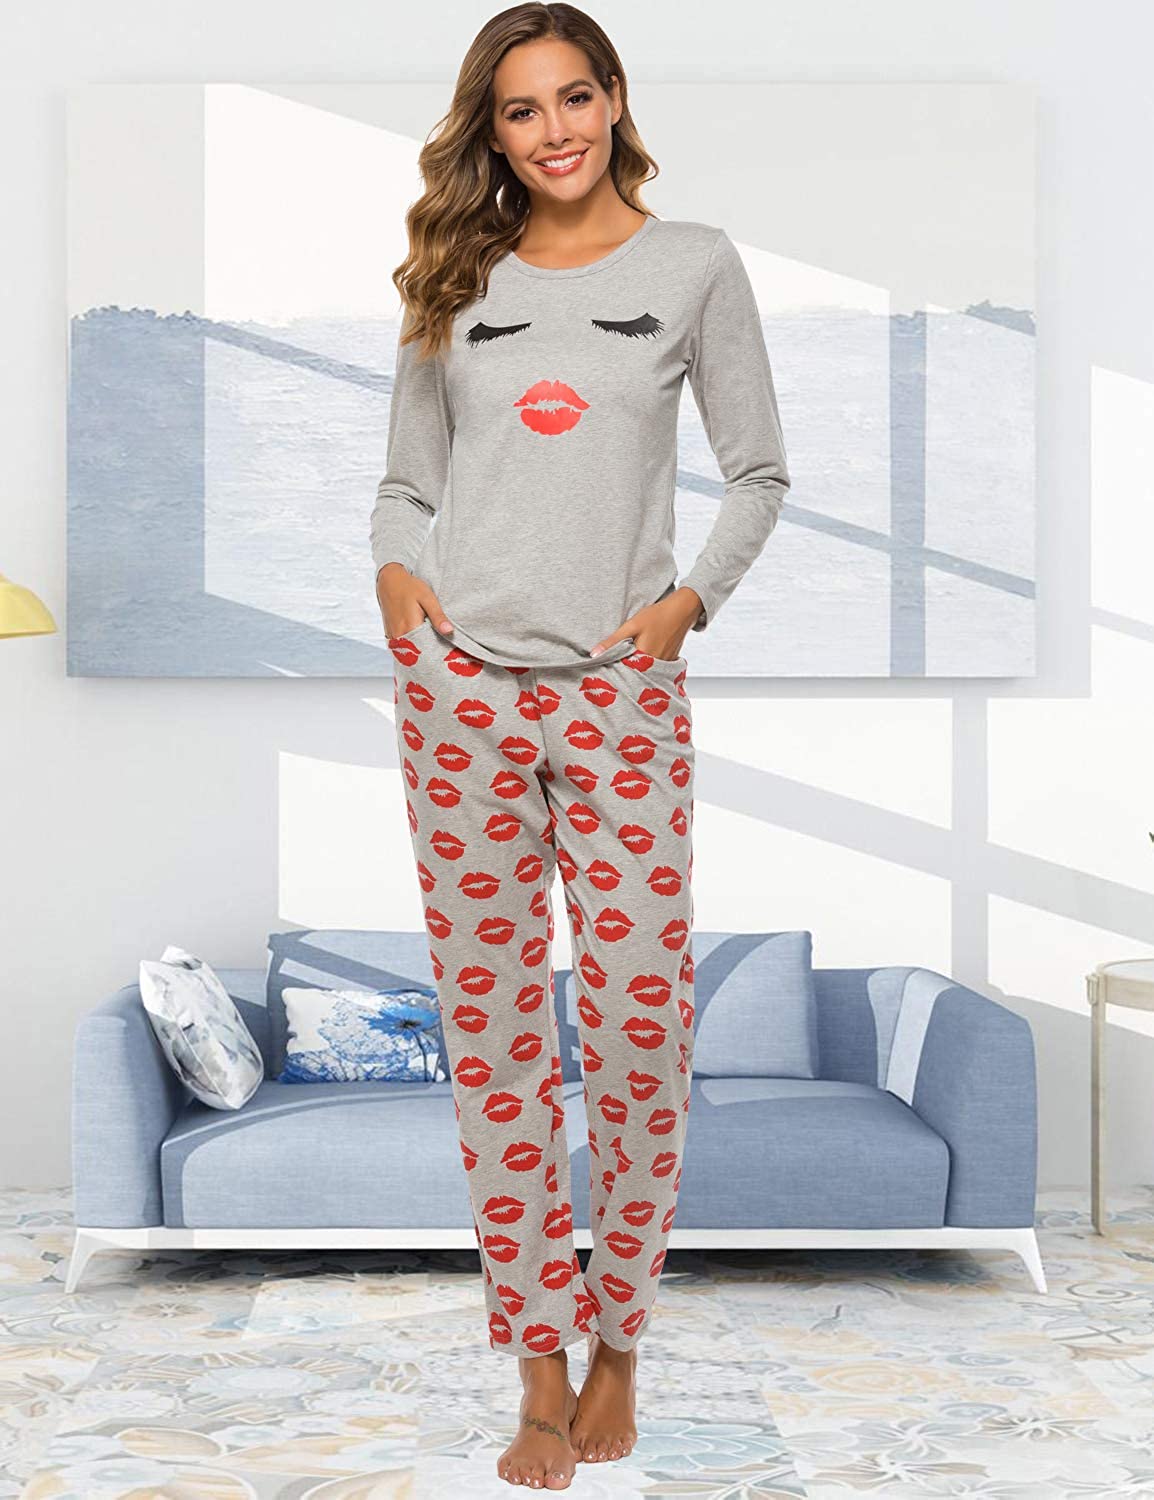 EISHOPEER Women's Long Sleeve Pajamas Set Cute Print Top and Pants Pjs ...